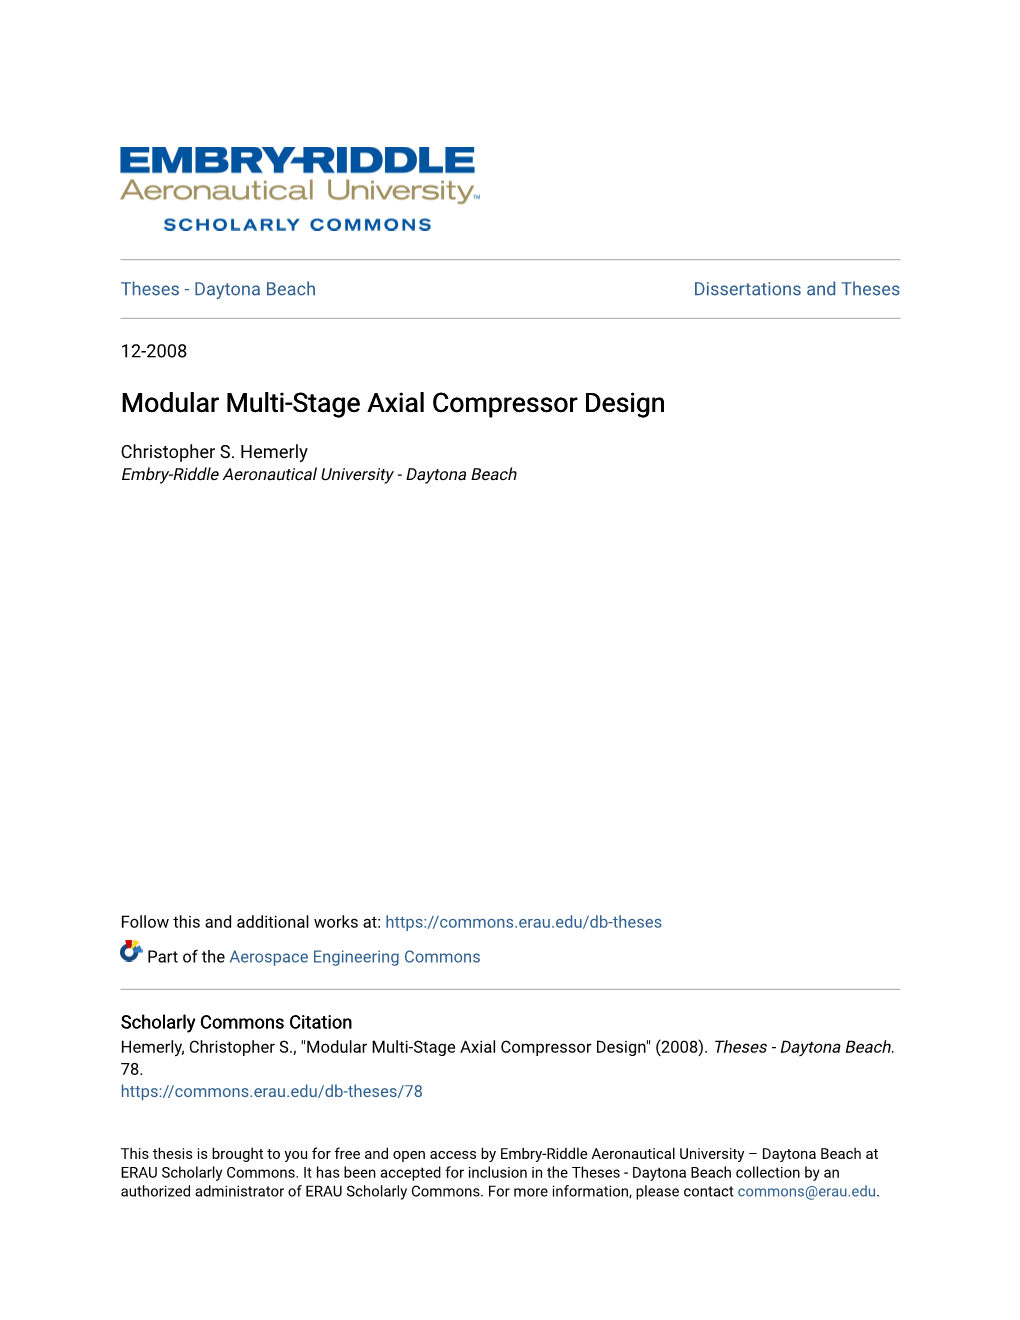 Modular Multi-Stage Axial Compressor Design